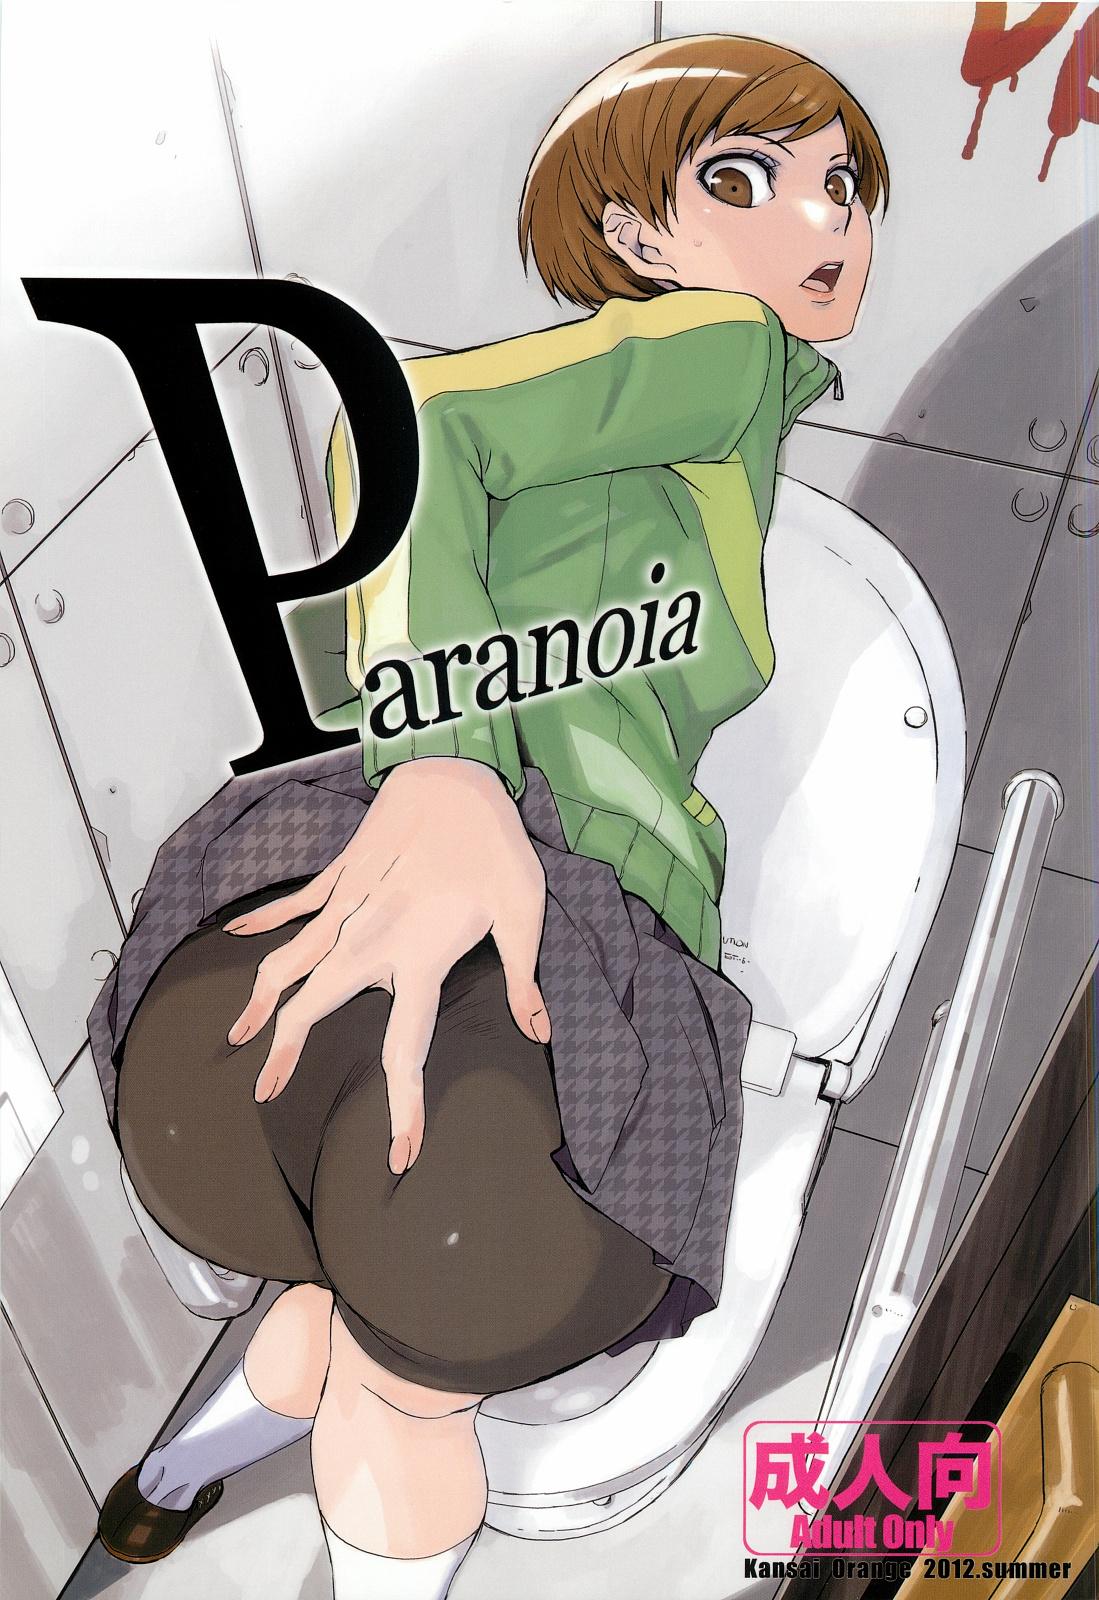 Amigos Paranoia - Persona 4 Masterbation - Page 1